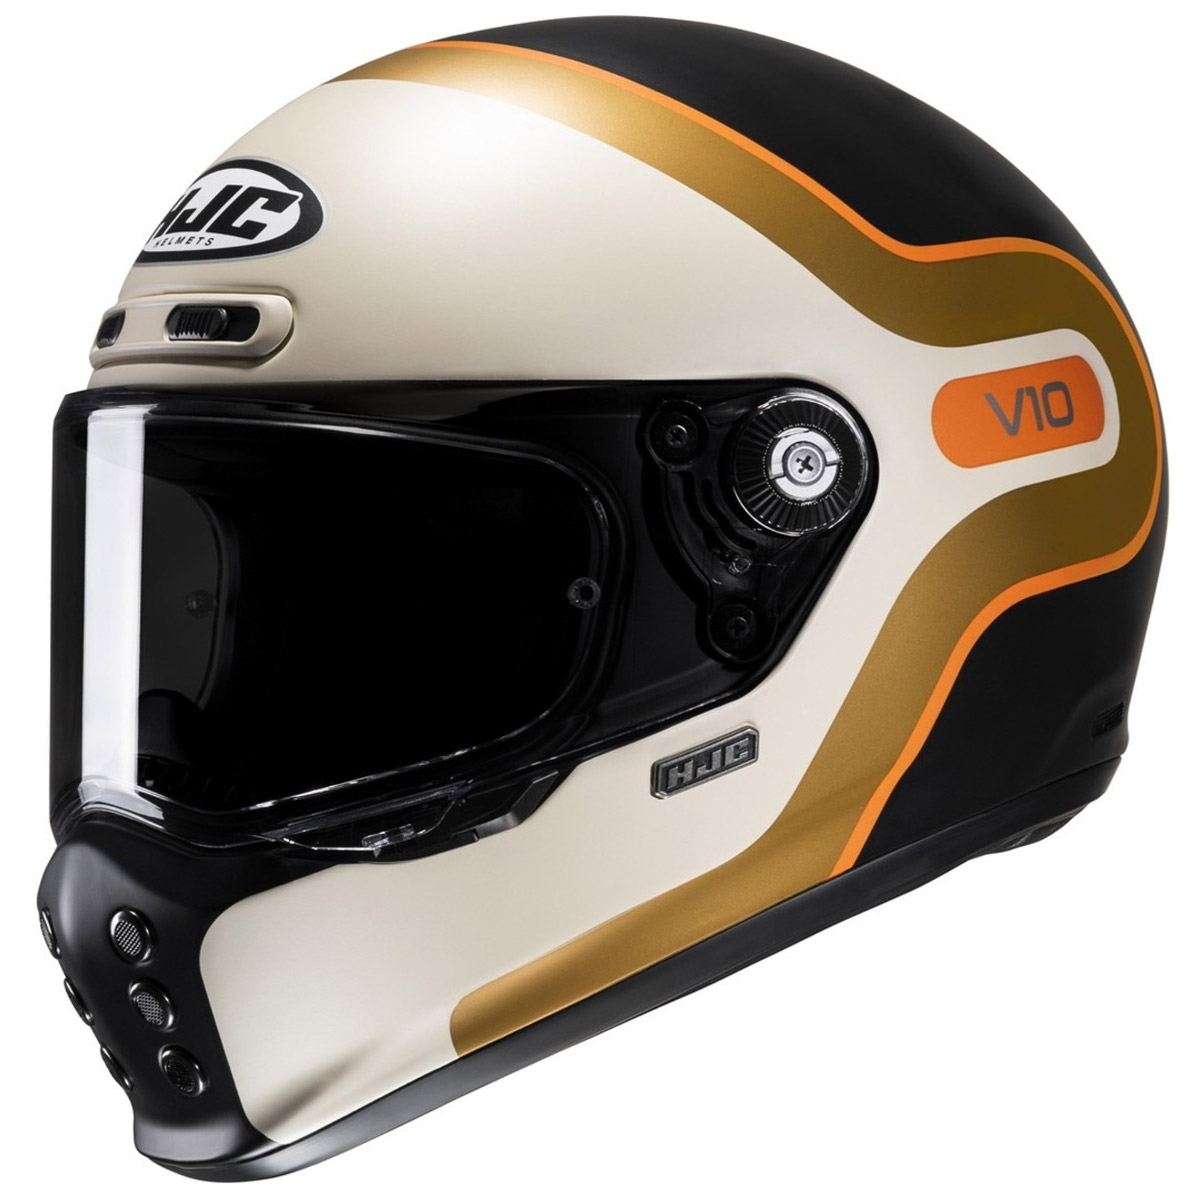 HJC V10 Grape Helm, beige-schwarz-gold-orange matt 